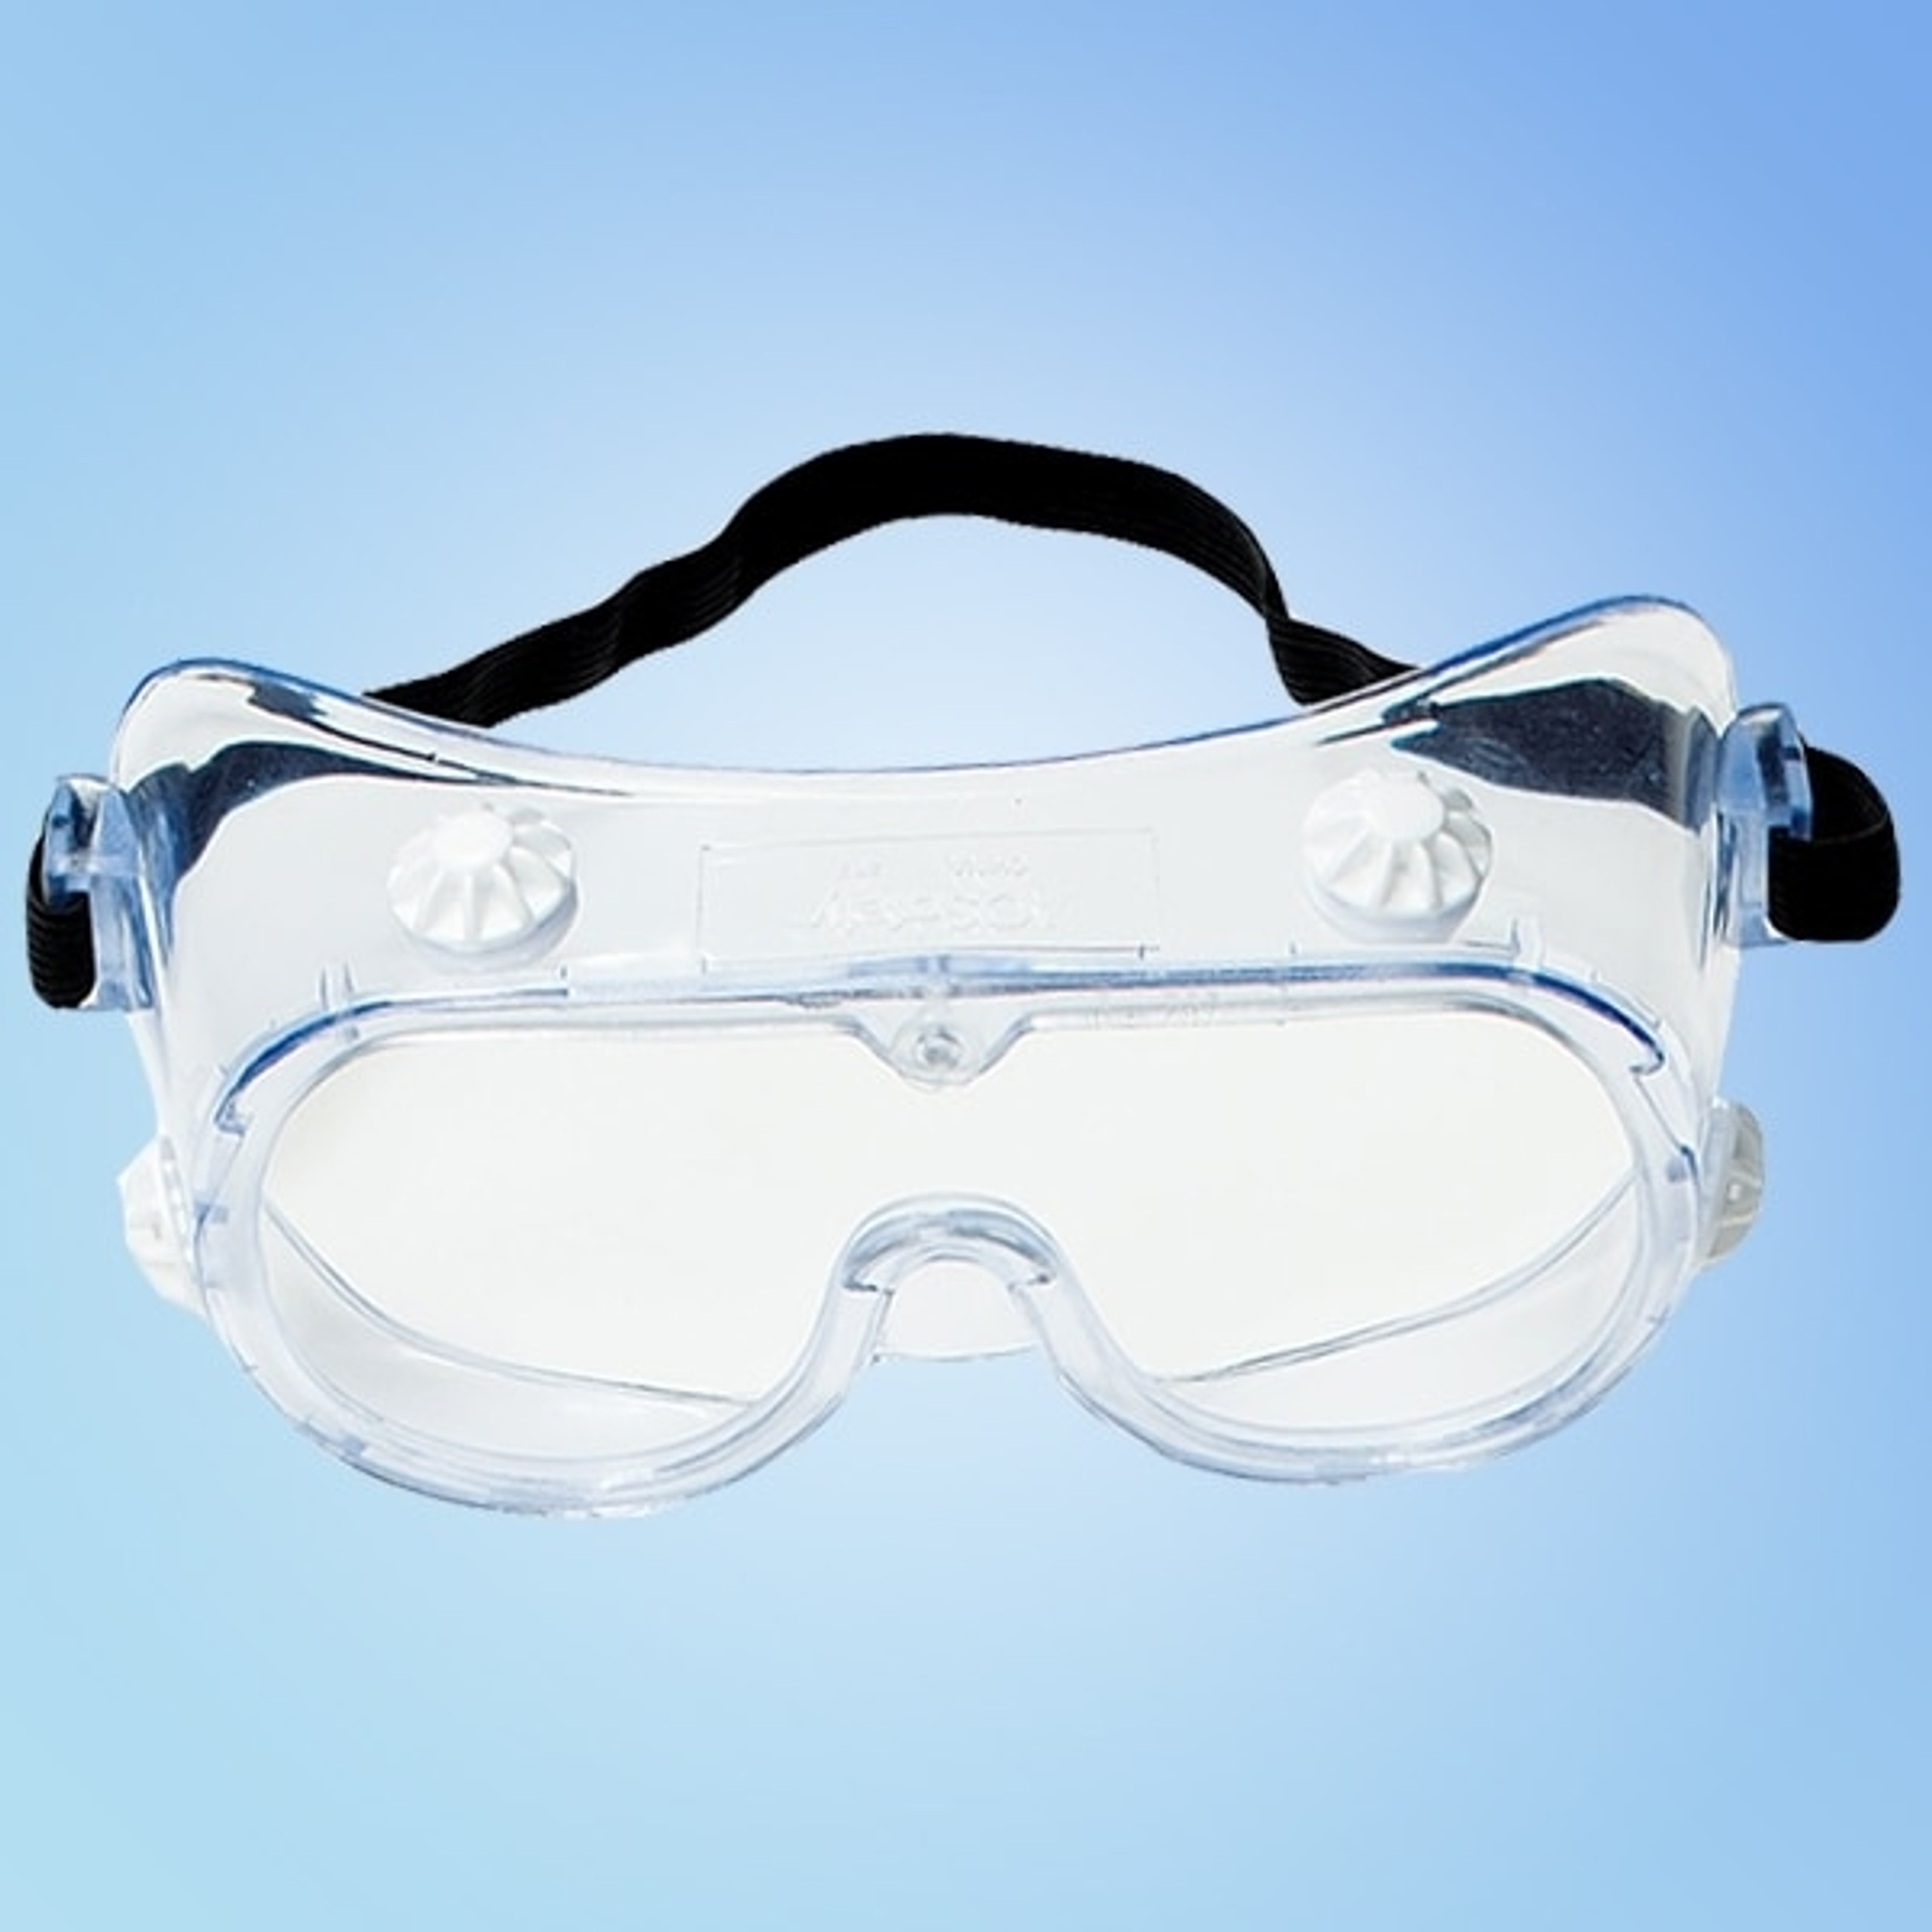 3M Safety Splash Goggles